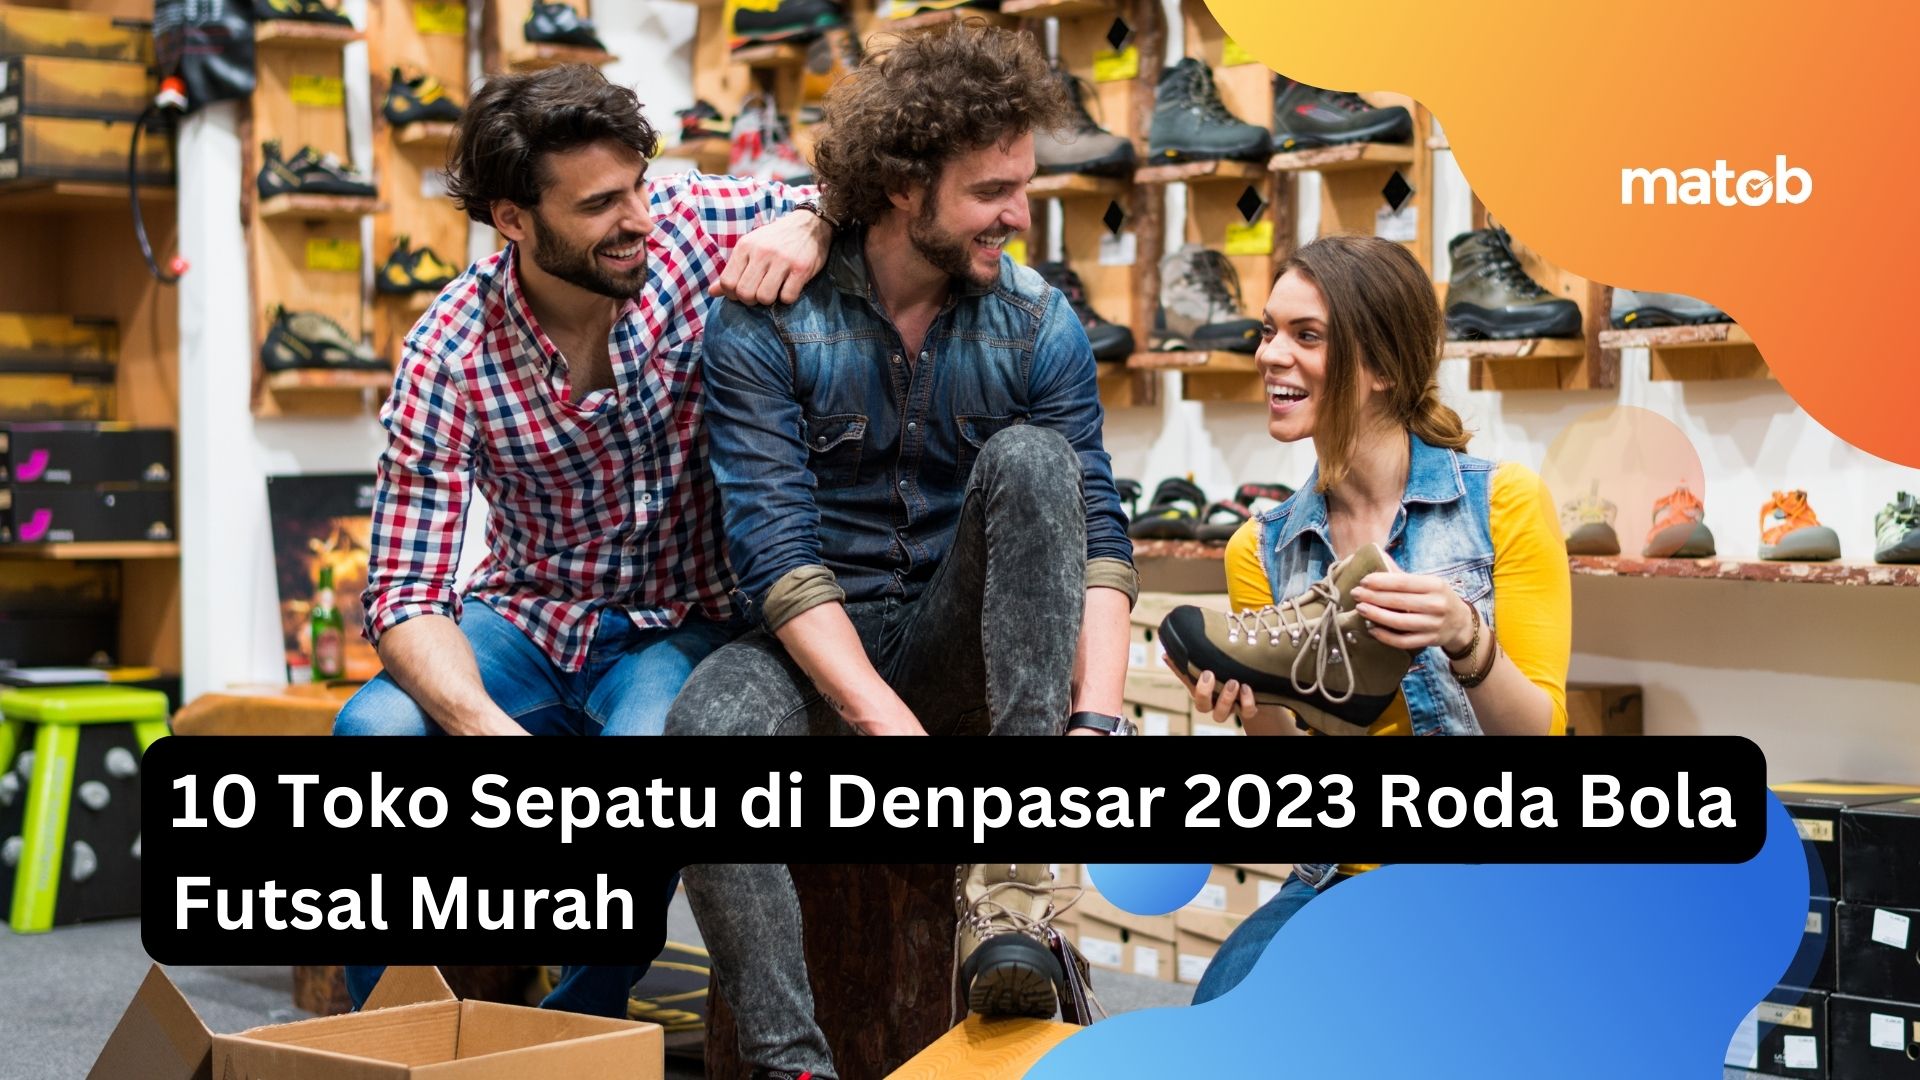 10 Toko Sepatu di Denpasar 2023 Roda Bola Futsal Murah